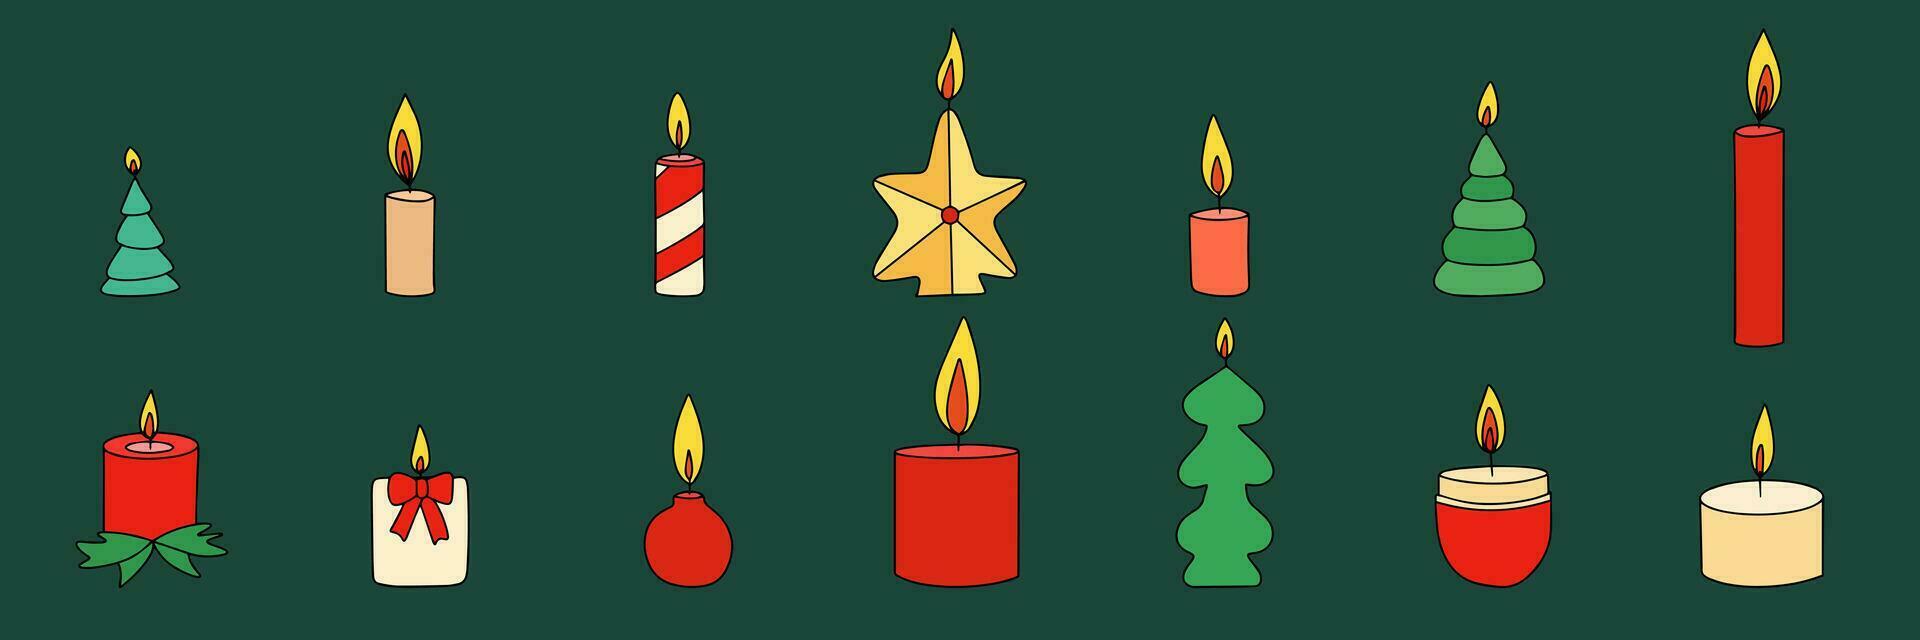 reeks van hand- getrokken Kerstmis kaarsen. verzameling van Kerstmis kaarsen in gekleurde schets stijl. tekening kaarsen. vector illustratie.